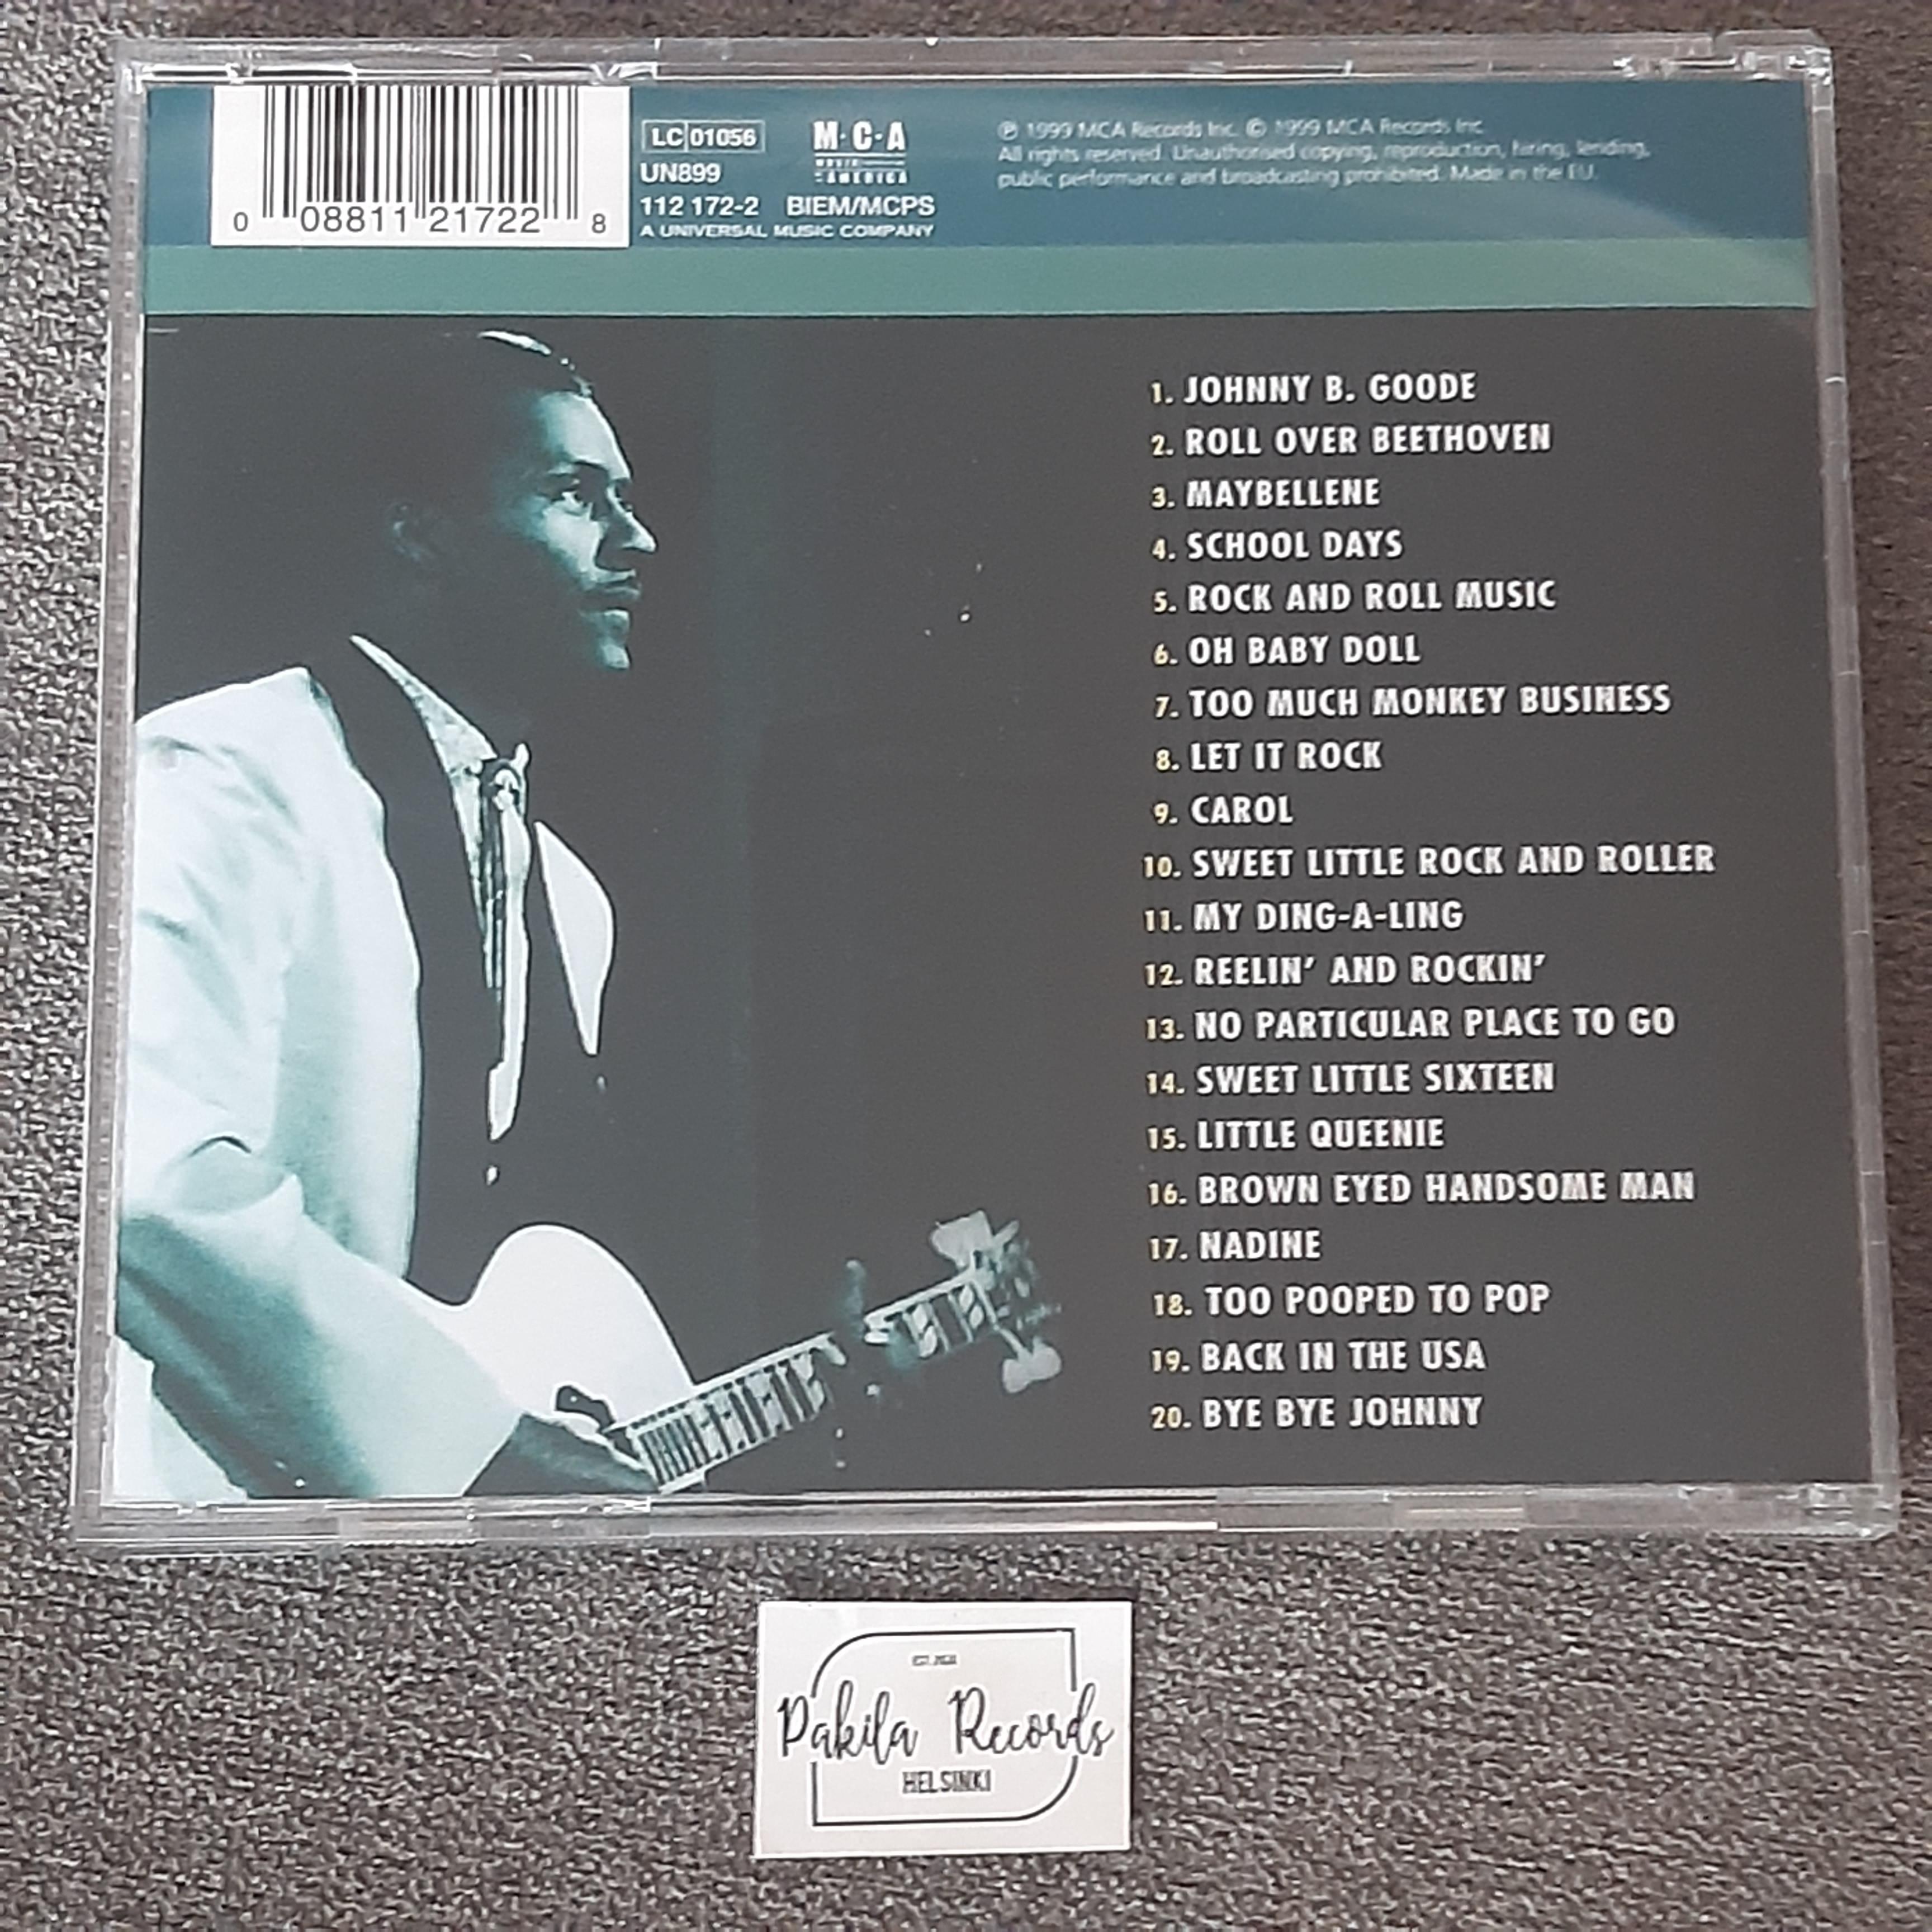 Chuck Berry - Classic Chuck Berry - CD (käytetty)